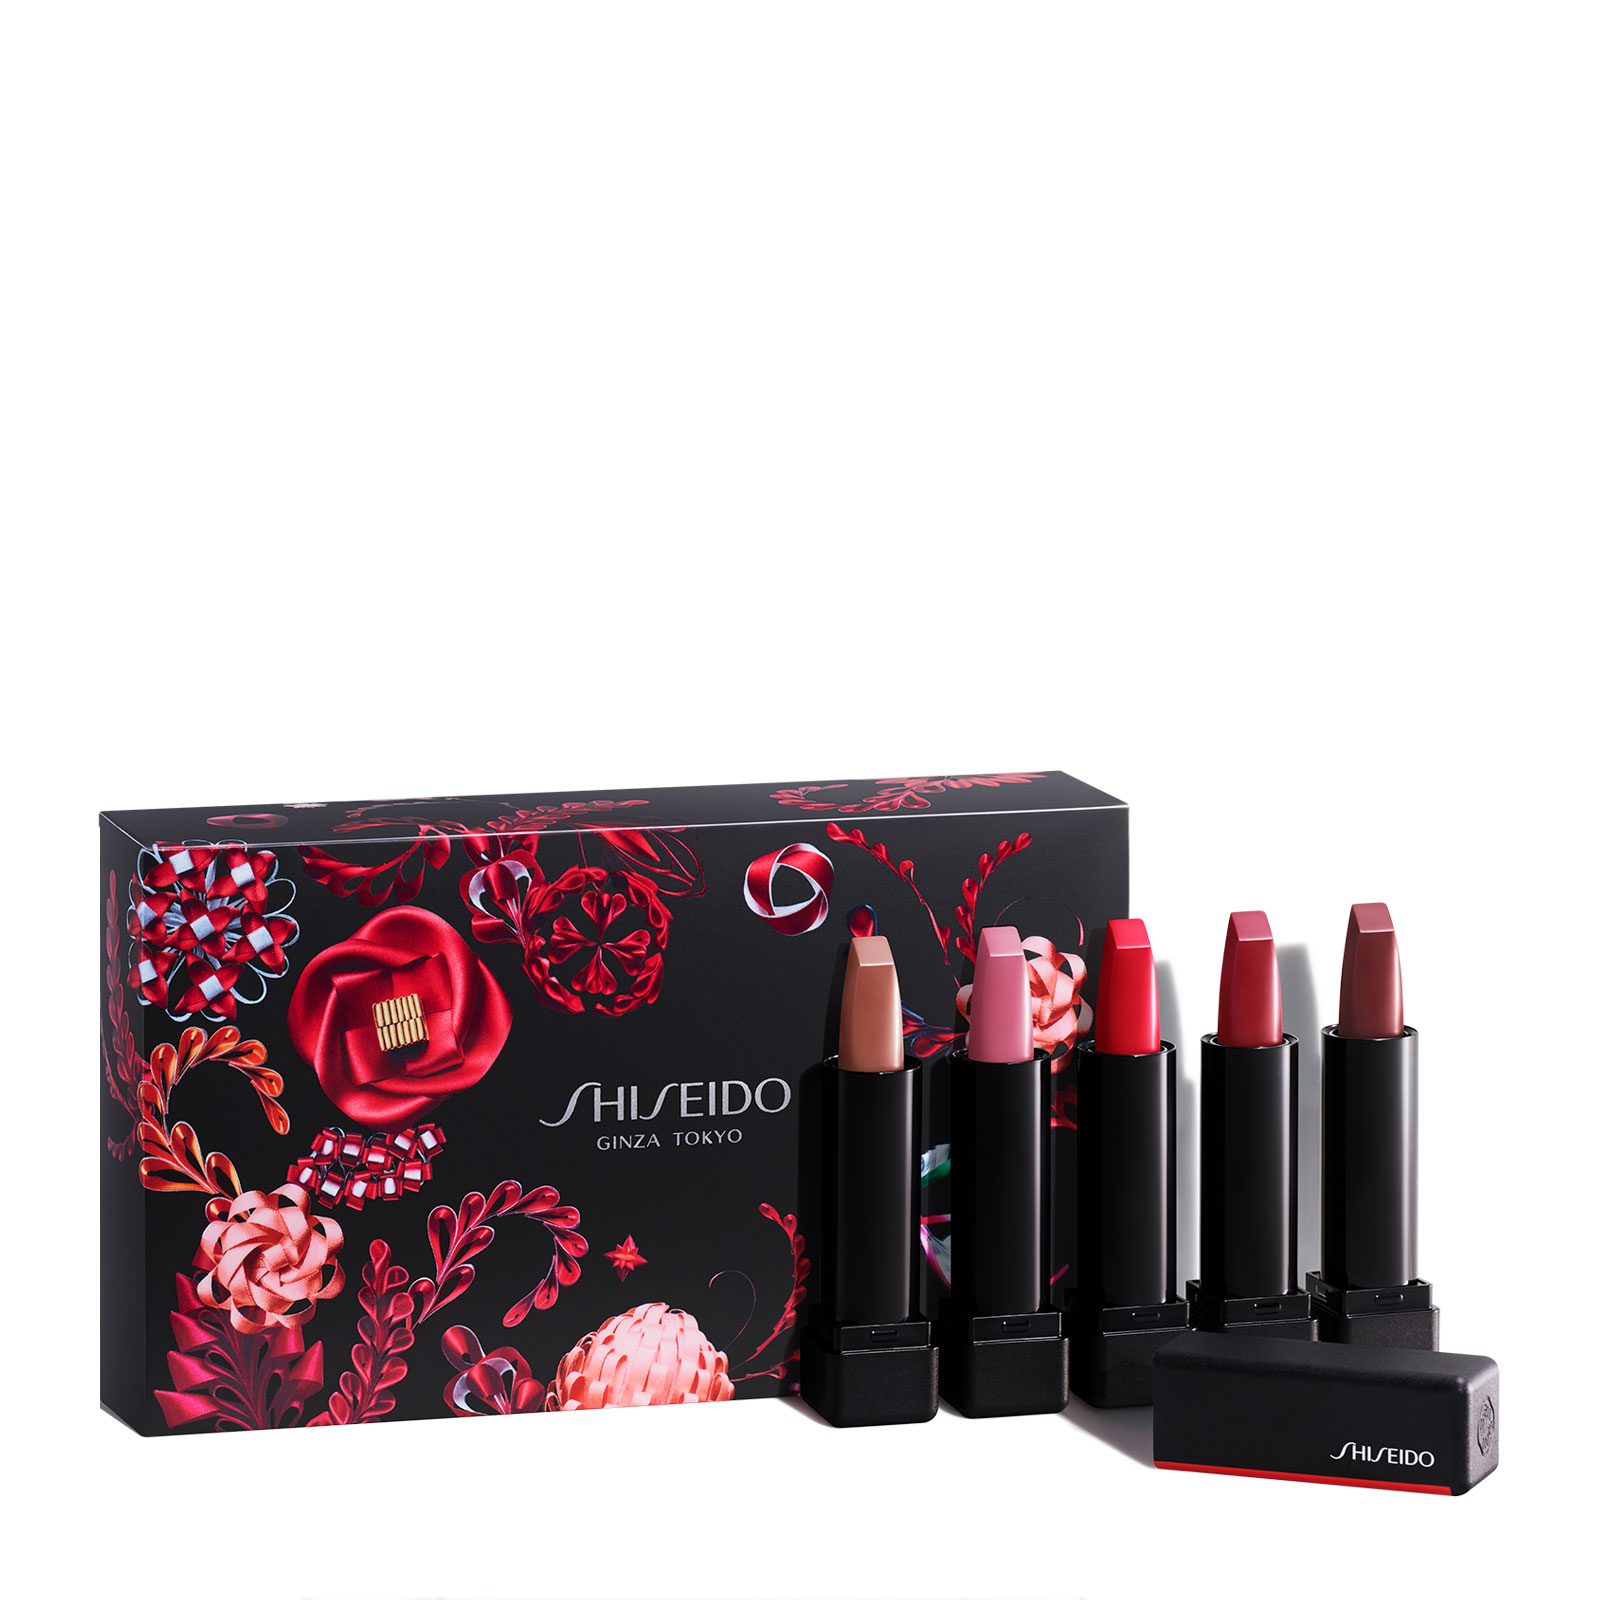 限定款！#英国直邮#【FU中文网】Shiseido 资生堂超美哑光唇膏五件套装